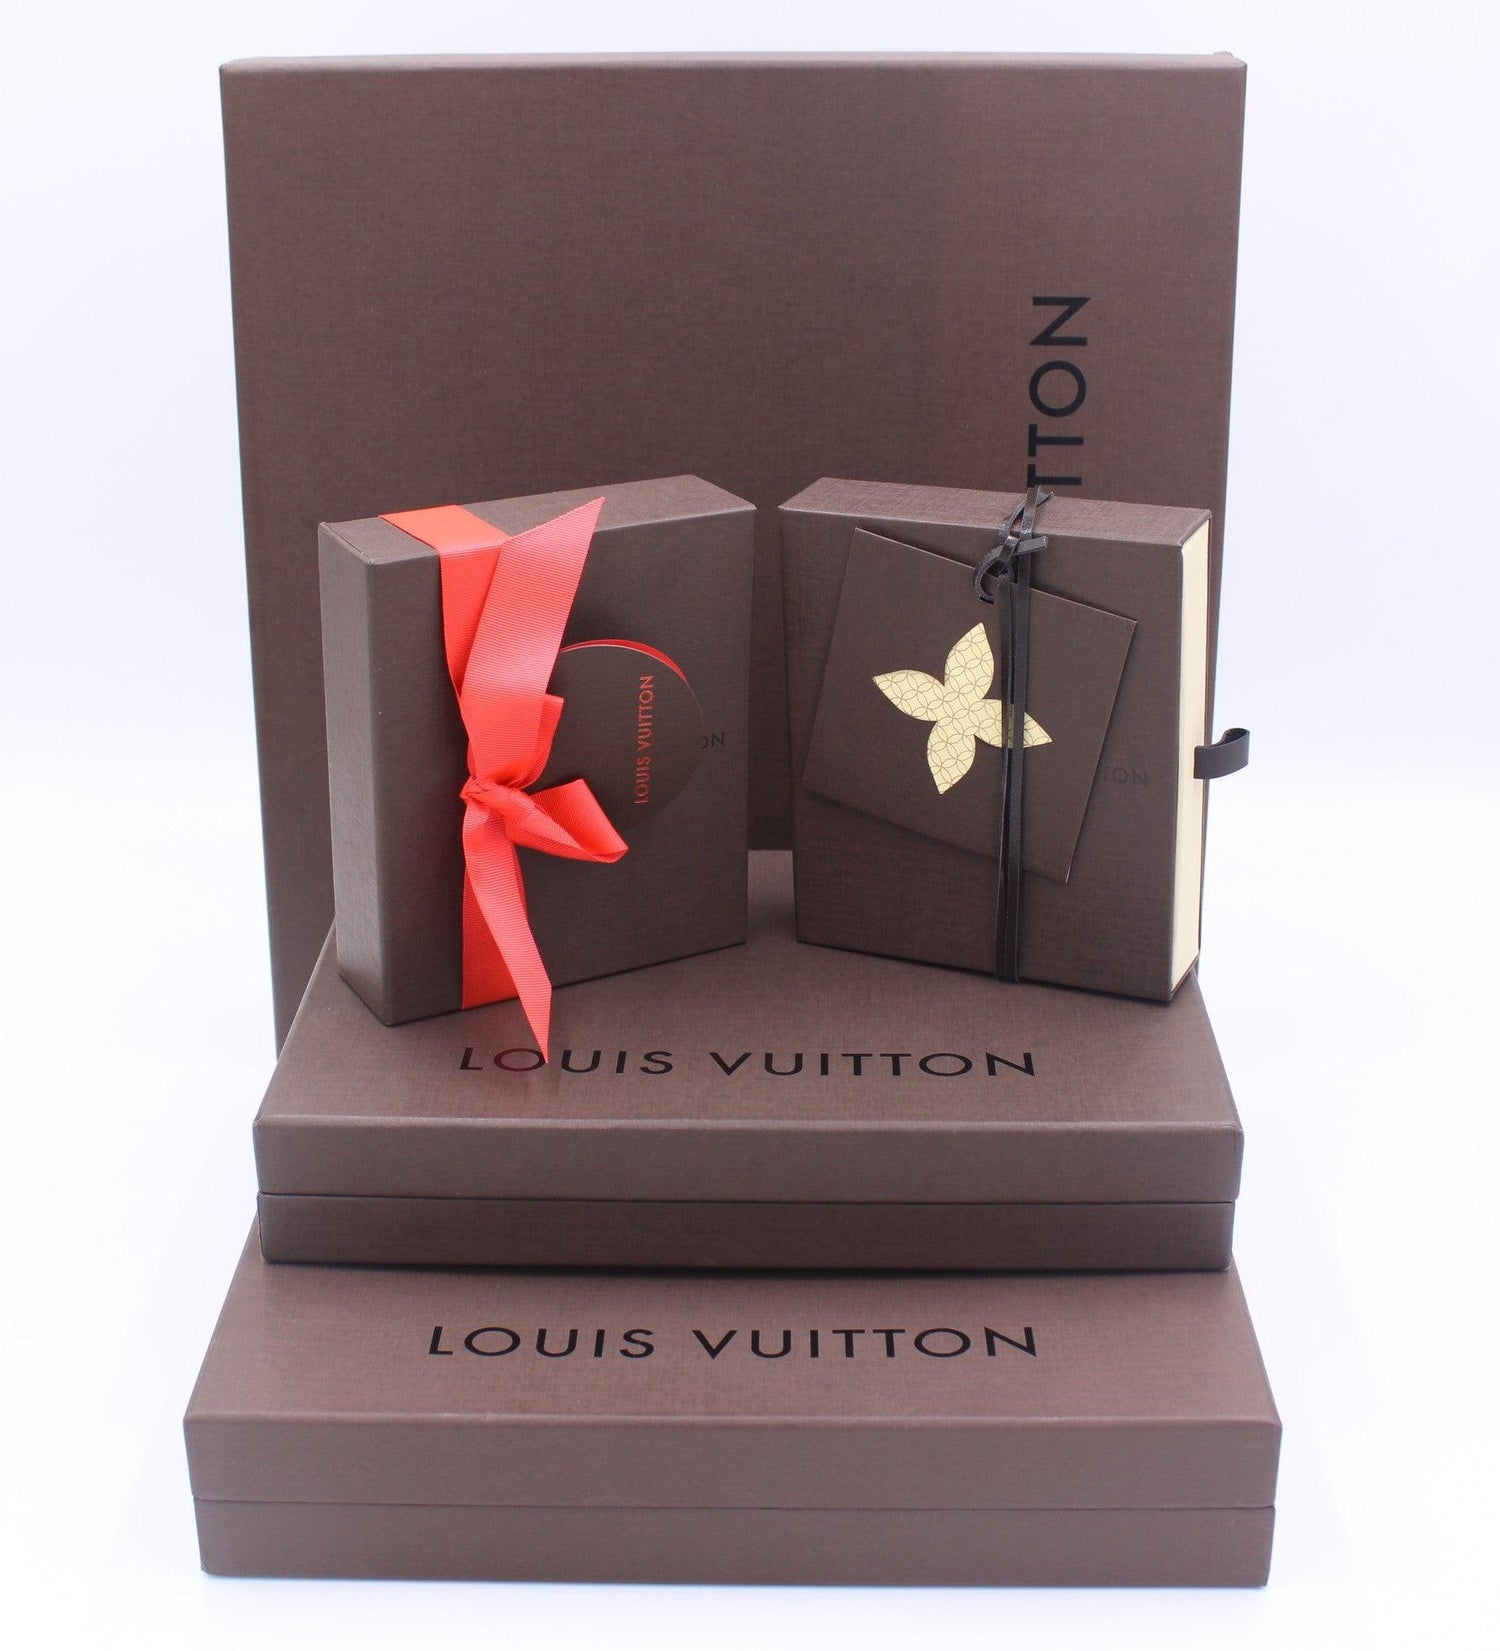 Louis Vuitton Aufbewahrungsboxen braun - Pre-Loved.at